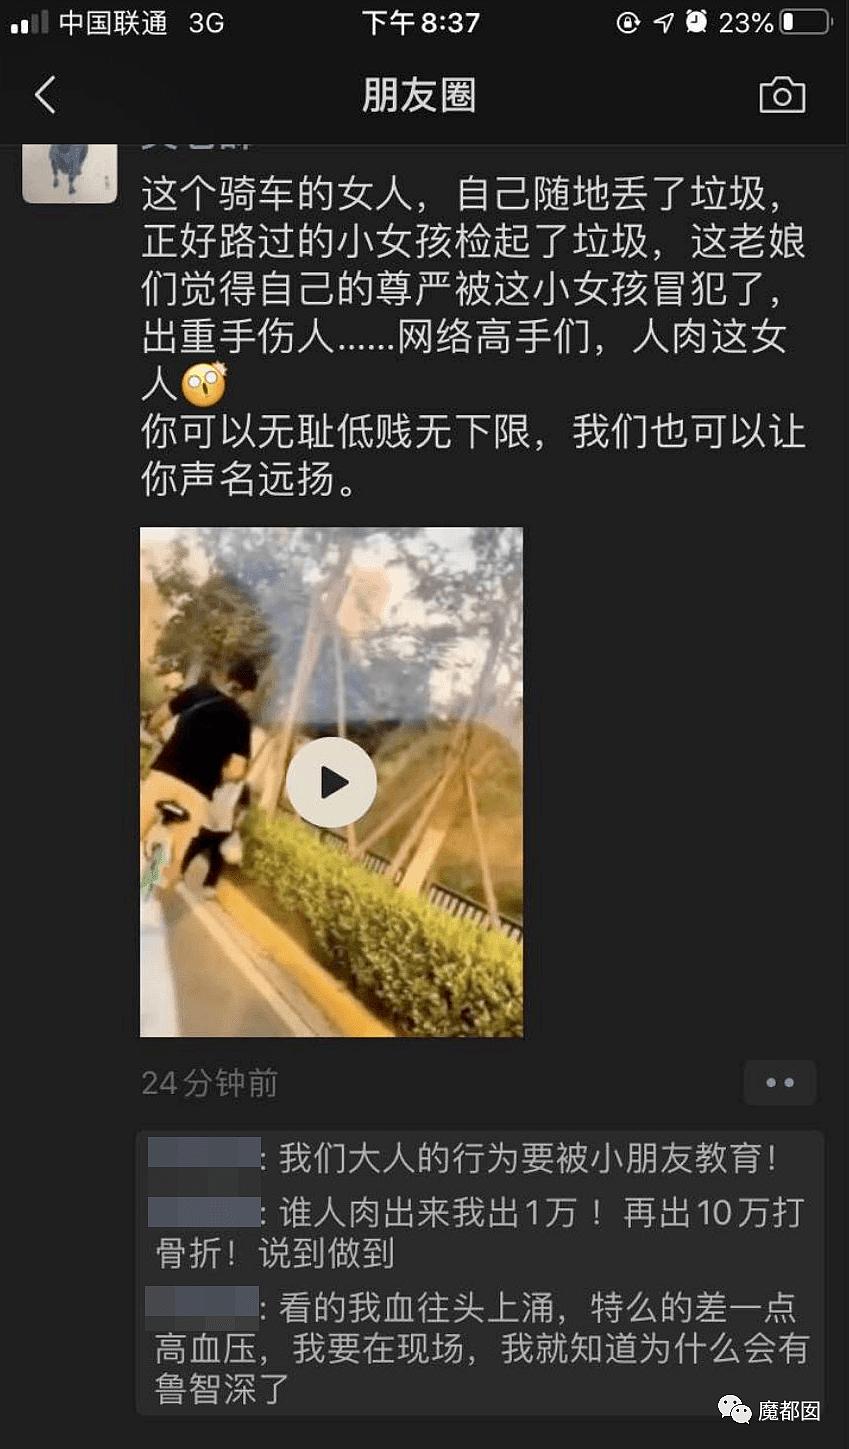 视频曝光！中国男子残忍摔打幼童致死激起全网公愤，母亲一旁拍摄未阻止，律师：拍摄者如有意配合或构成共犯（视频/组图） - 41